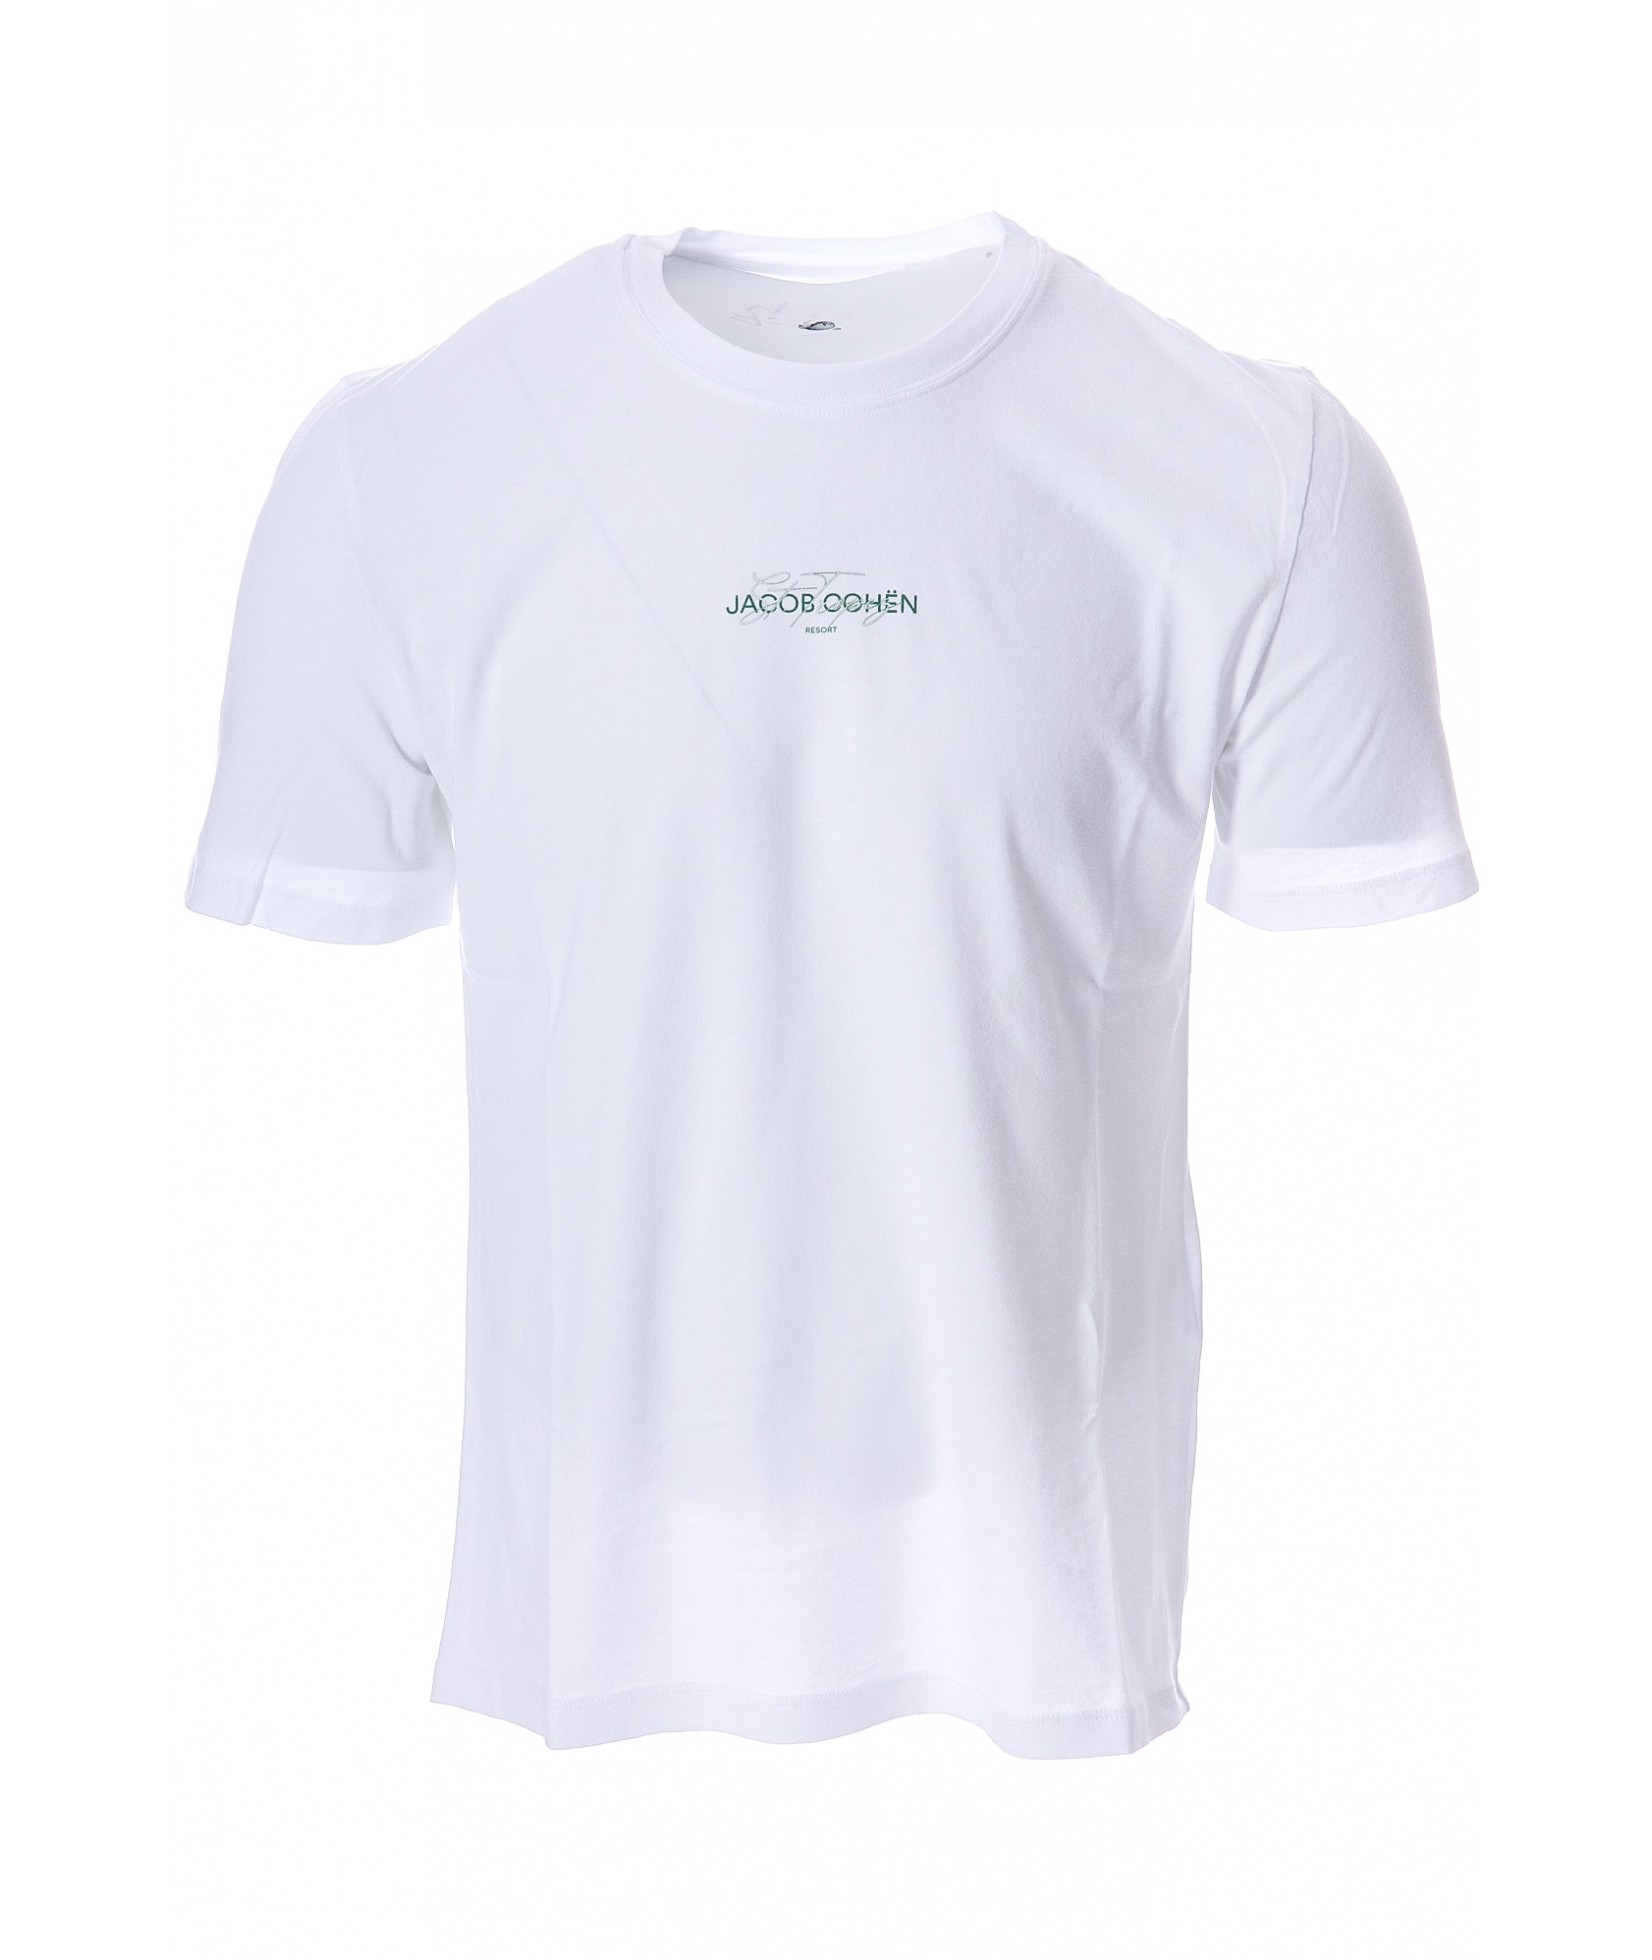 Jacob Cohen T-Shirt weiss (36080)